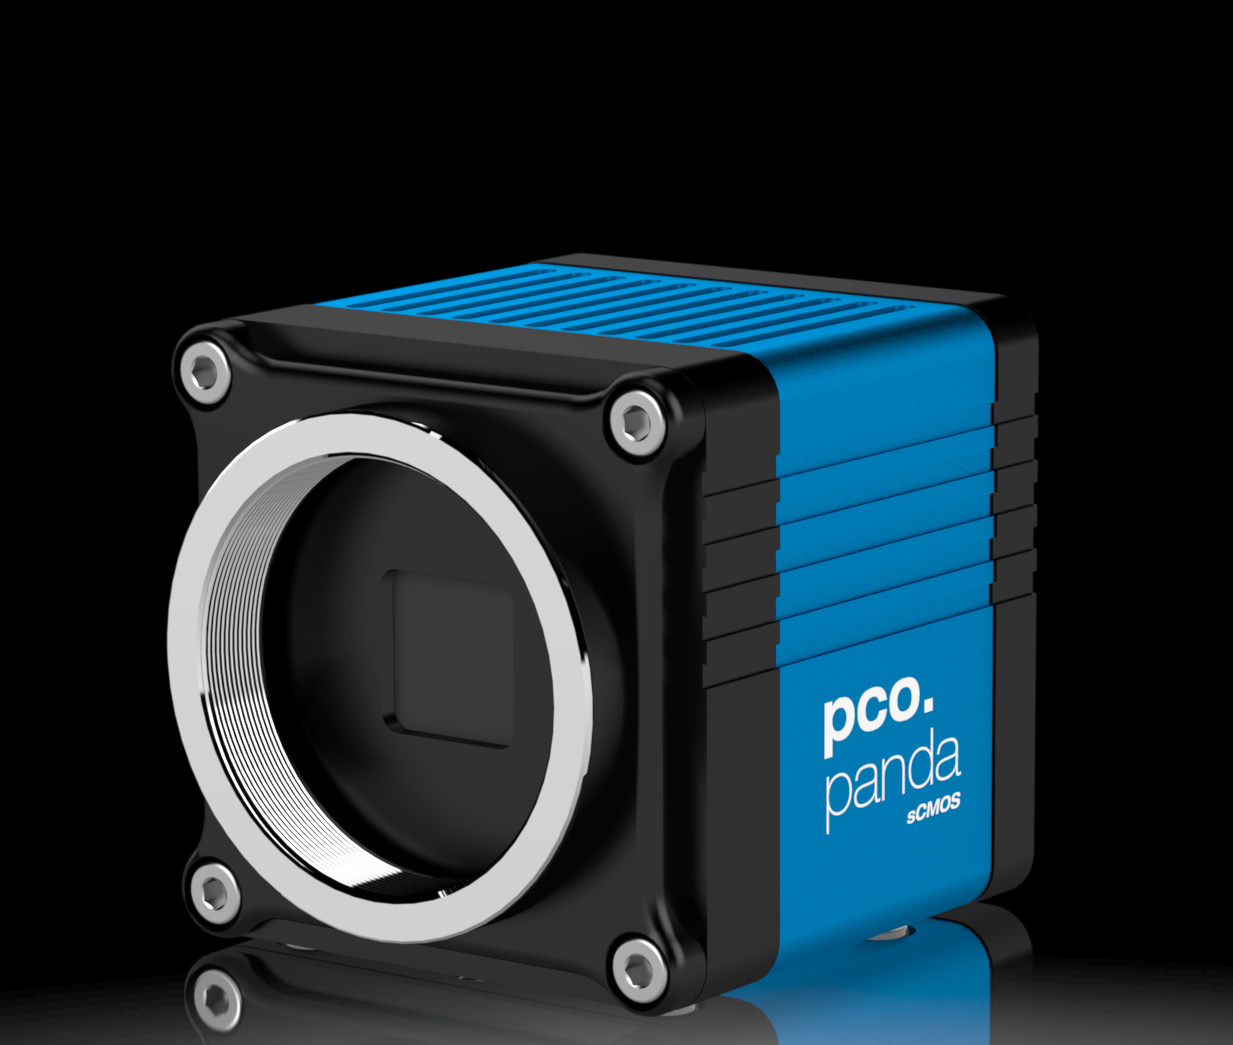 pco.panda 26 DS 高分辨率sCMOS相机 科学和工业相机